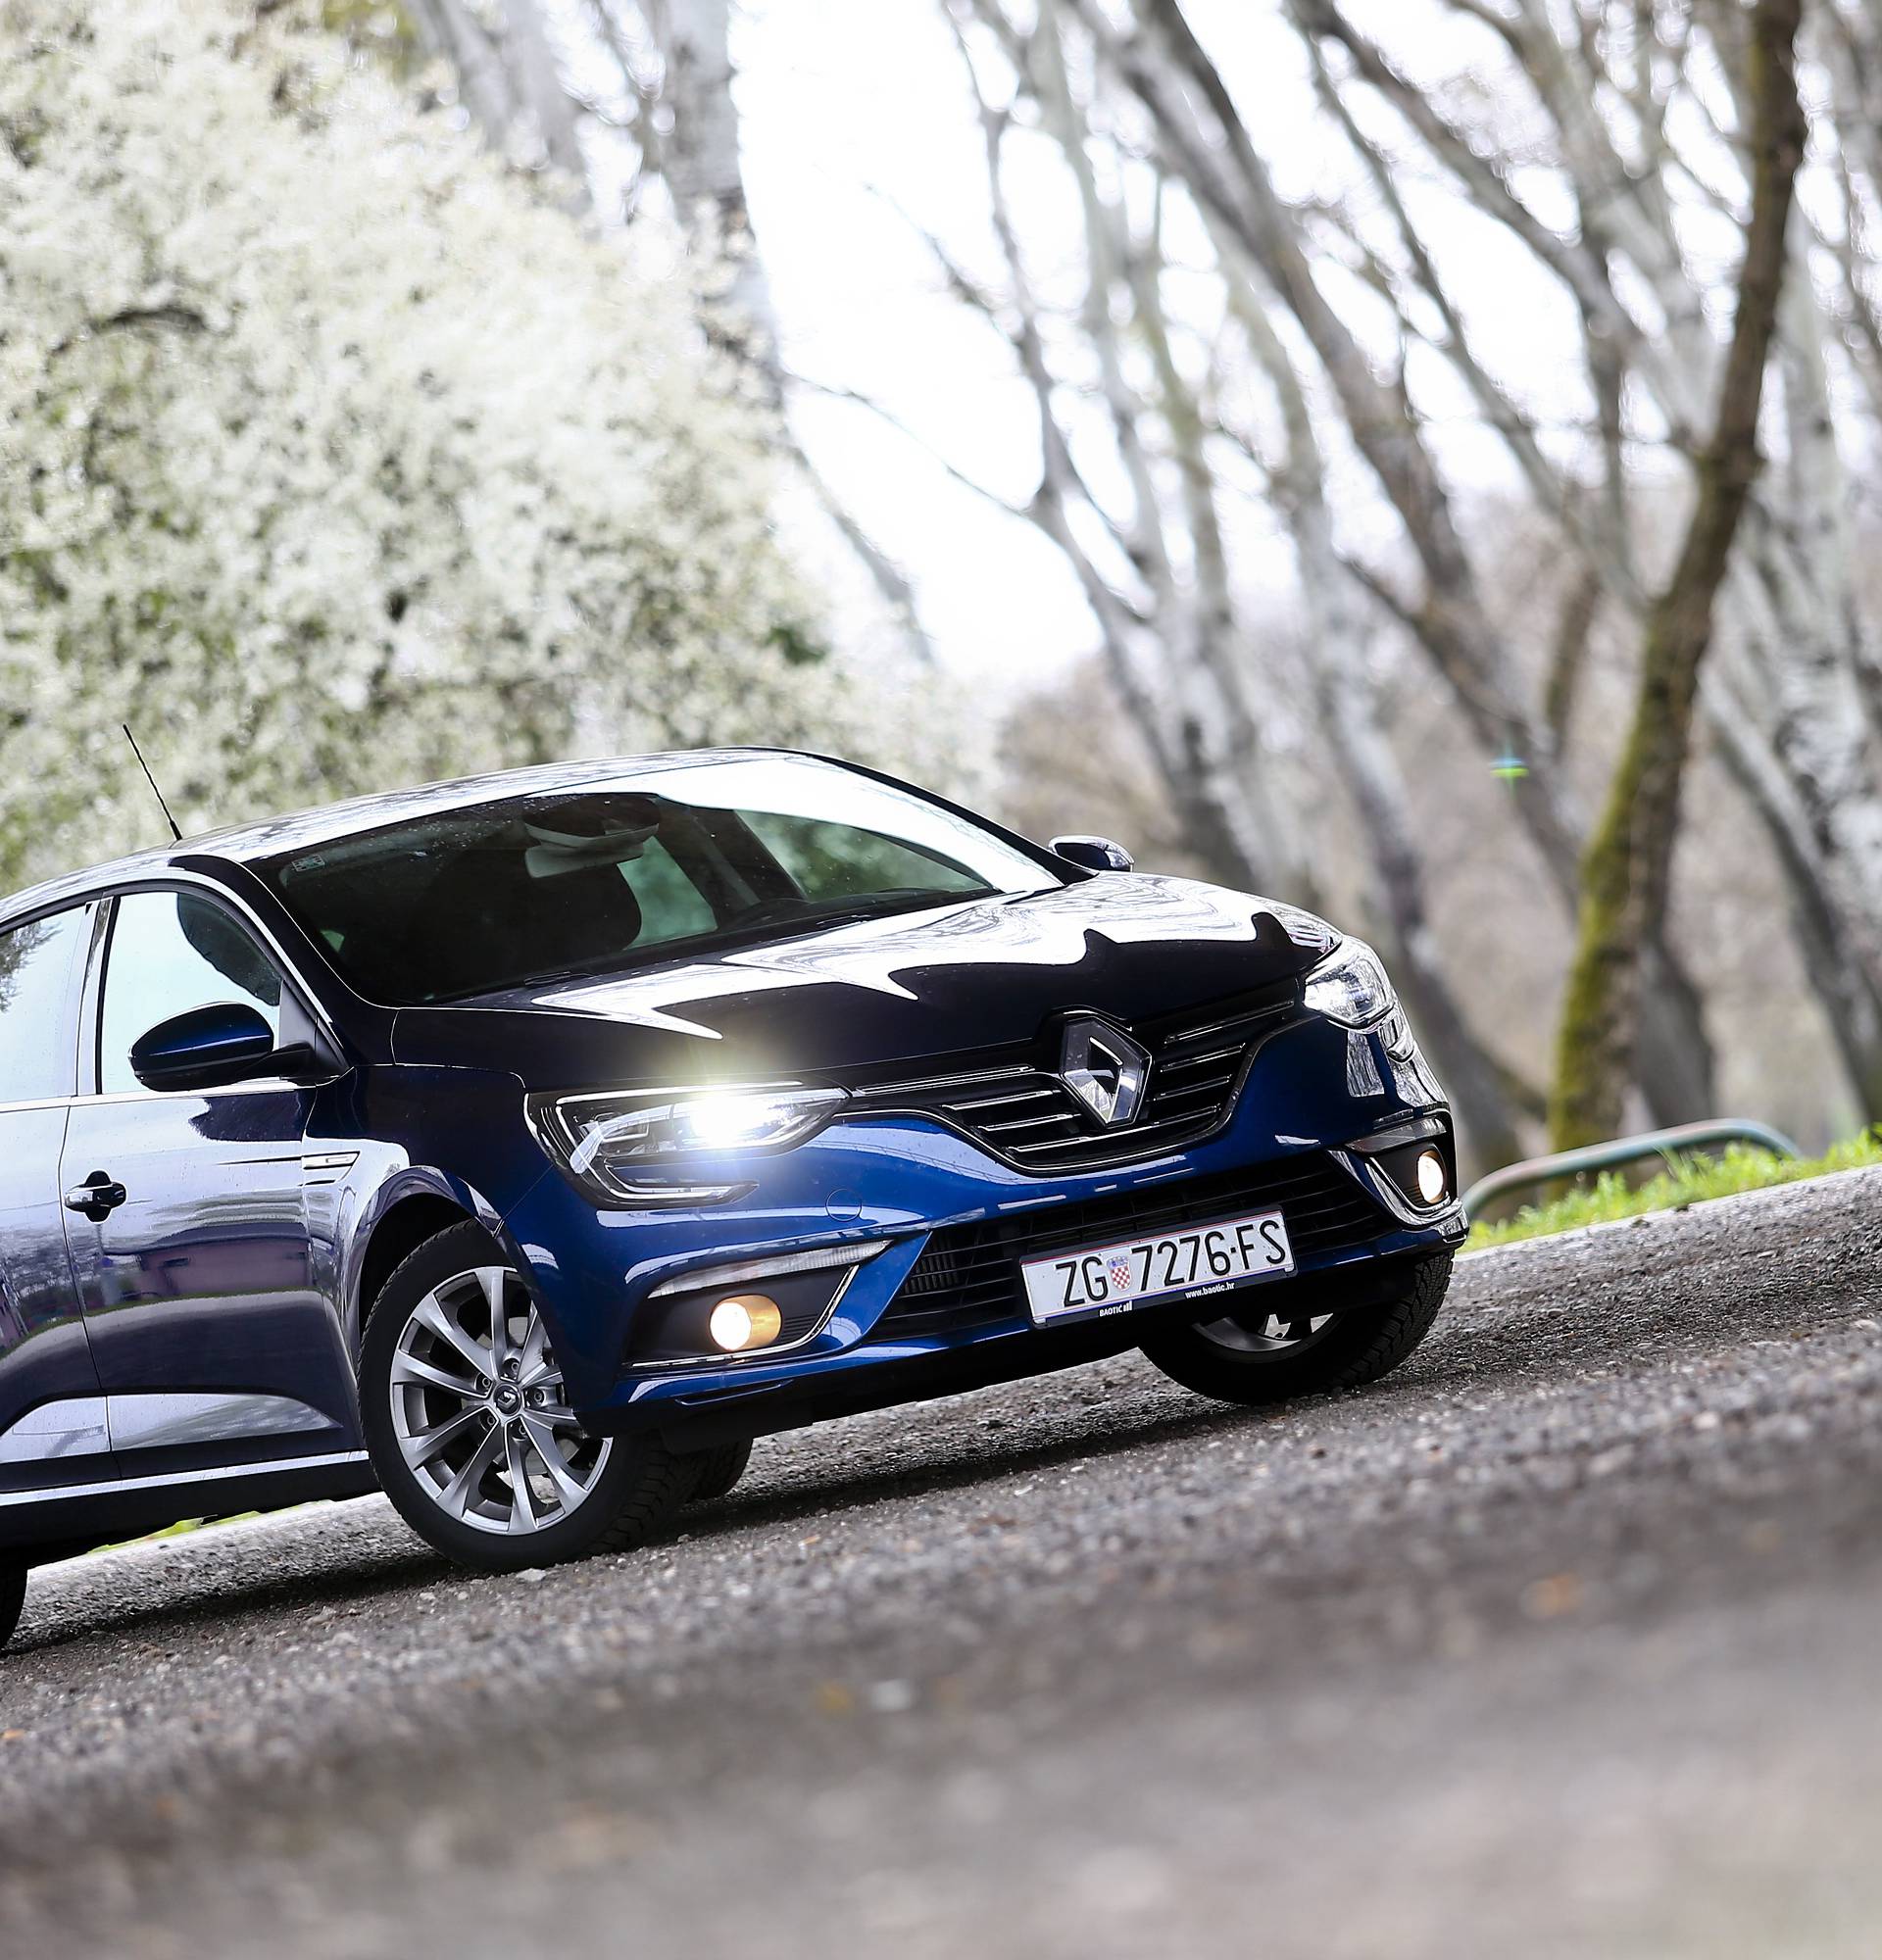 Stigao je novi Renault Megane: Vrlo štedljiv, moderan i udoban